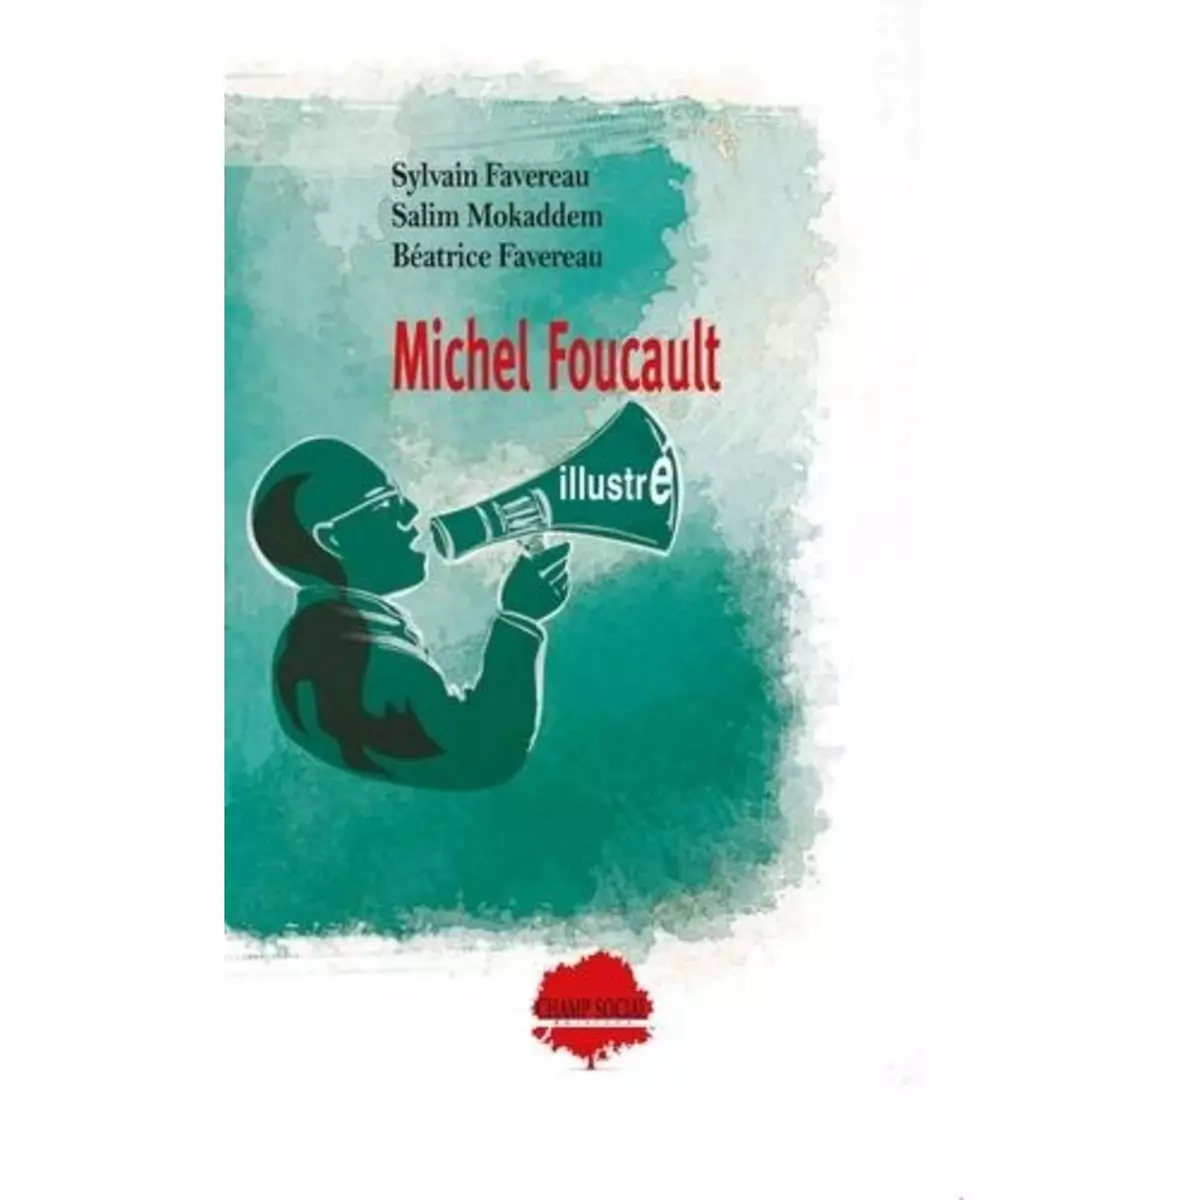  MICHEL FOUCAULT ILLUSTRE , Favereau Sylvain